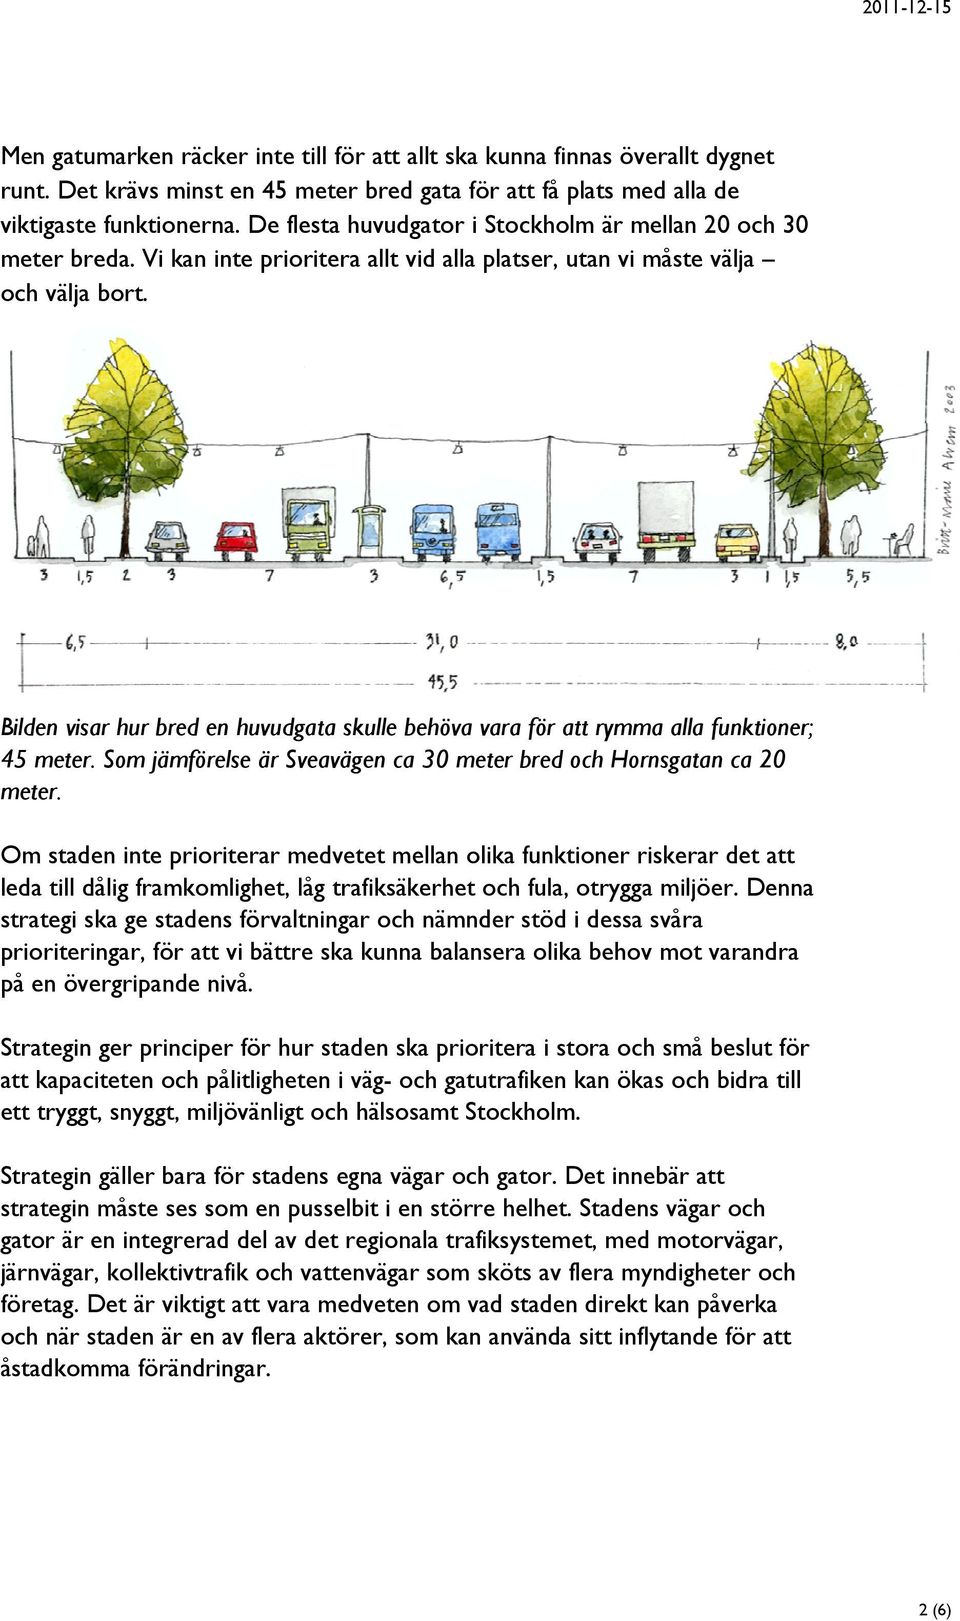 Bilden visar hur bred en huvudgata skulle behöva vara för att rymma alla funktioner; 45 meter. Som jämförelse är Sveavägen ca 30 meter bred och Hornsgatan ca 20 meter.